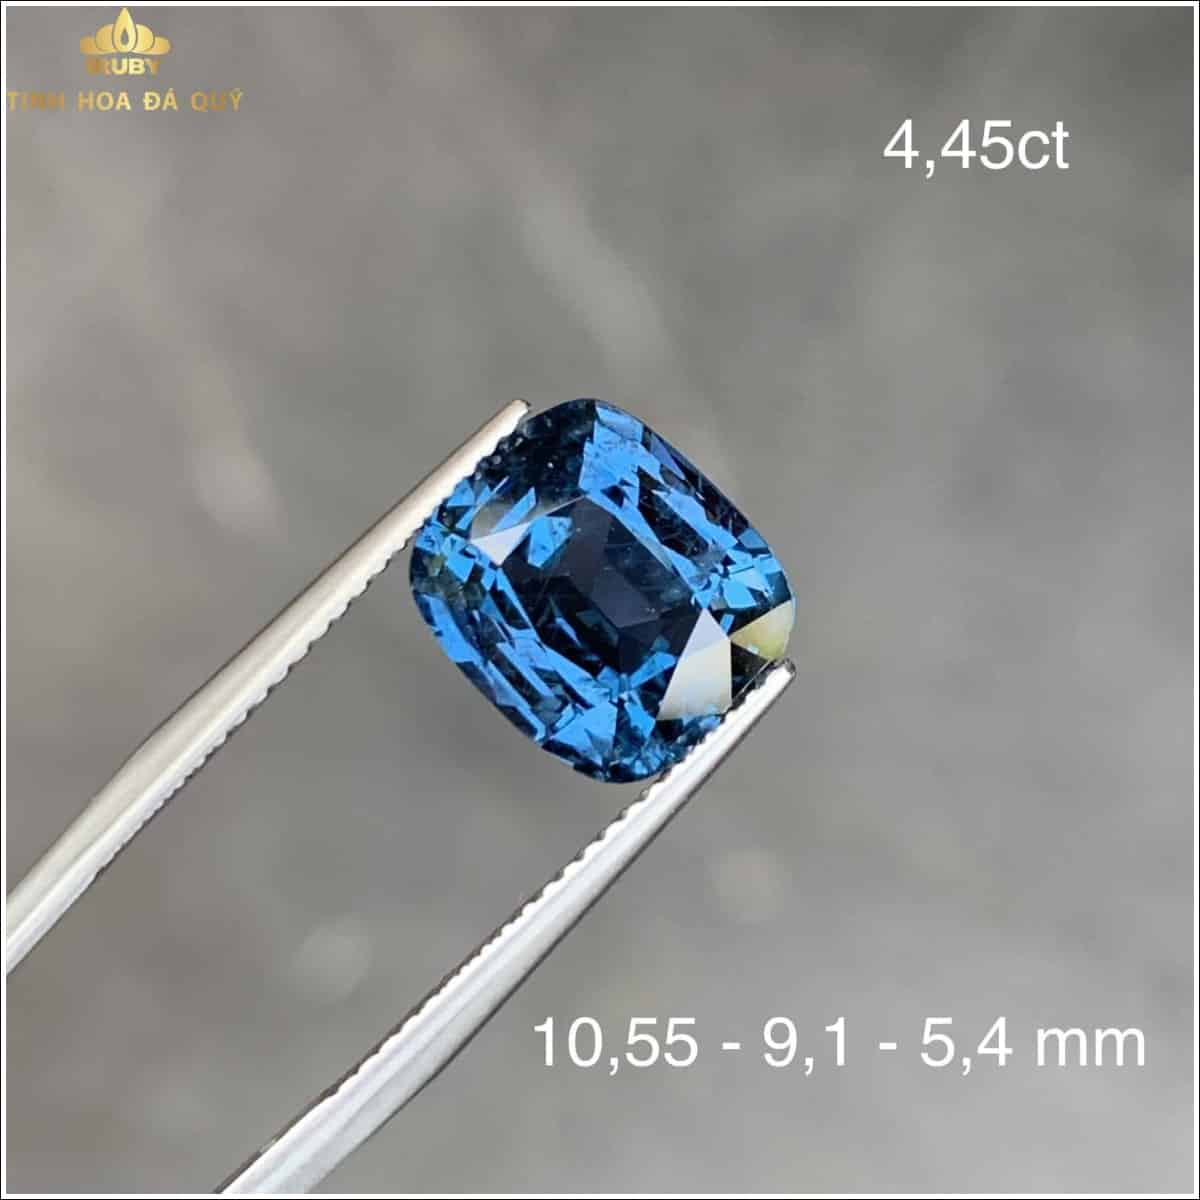 Viên Spinel xanh bãi bưởi sắc cobalt đẹp 4,45ct - IRSI 2212445 hình ảnh 3